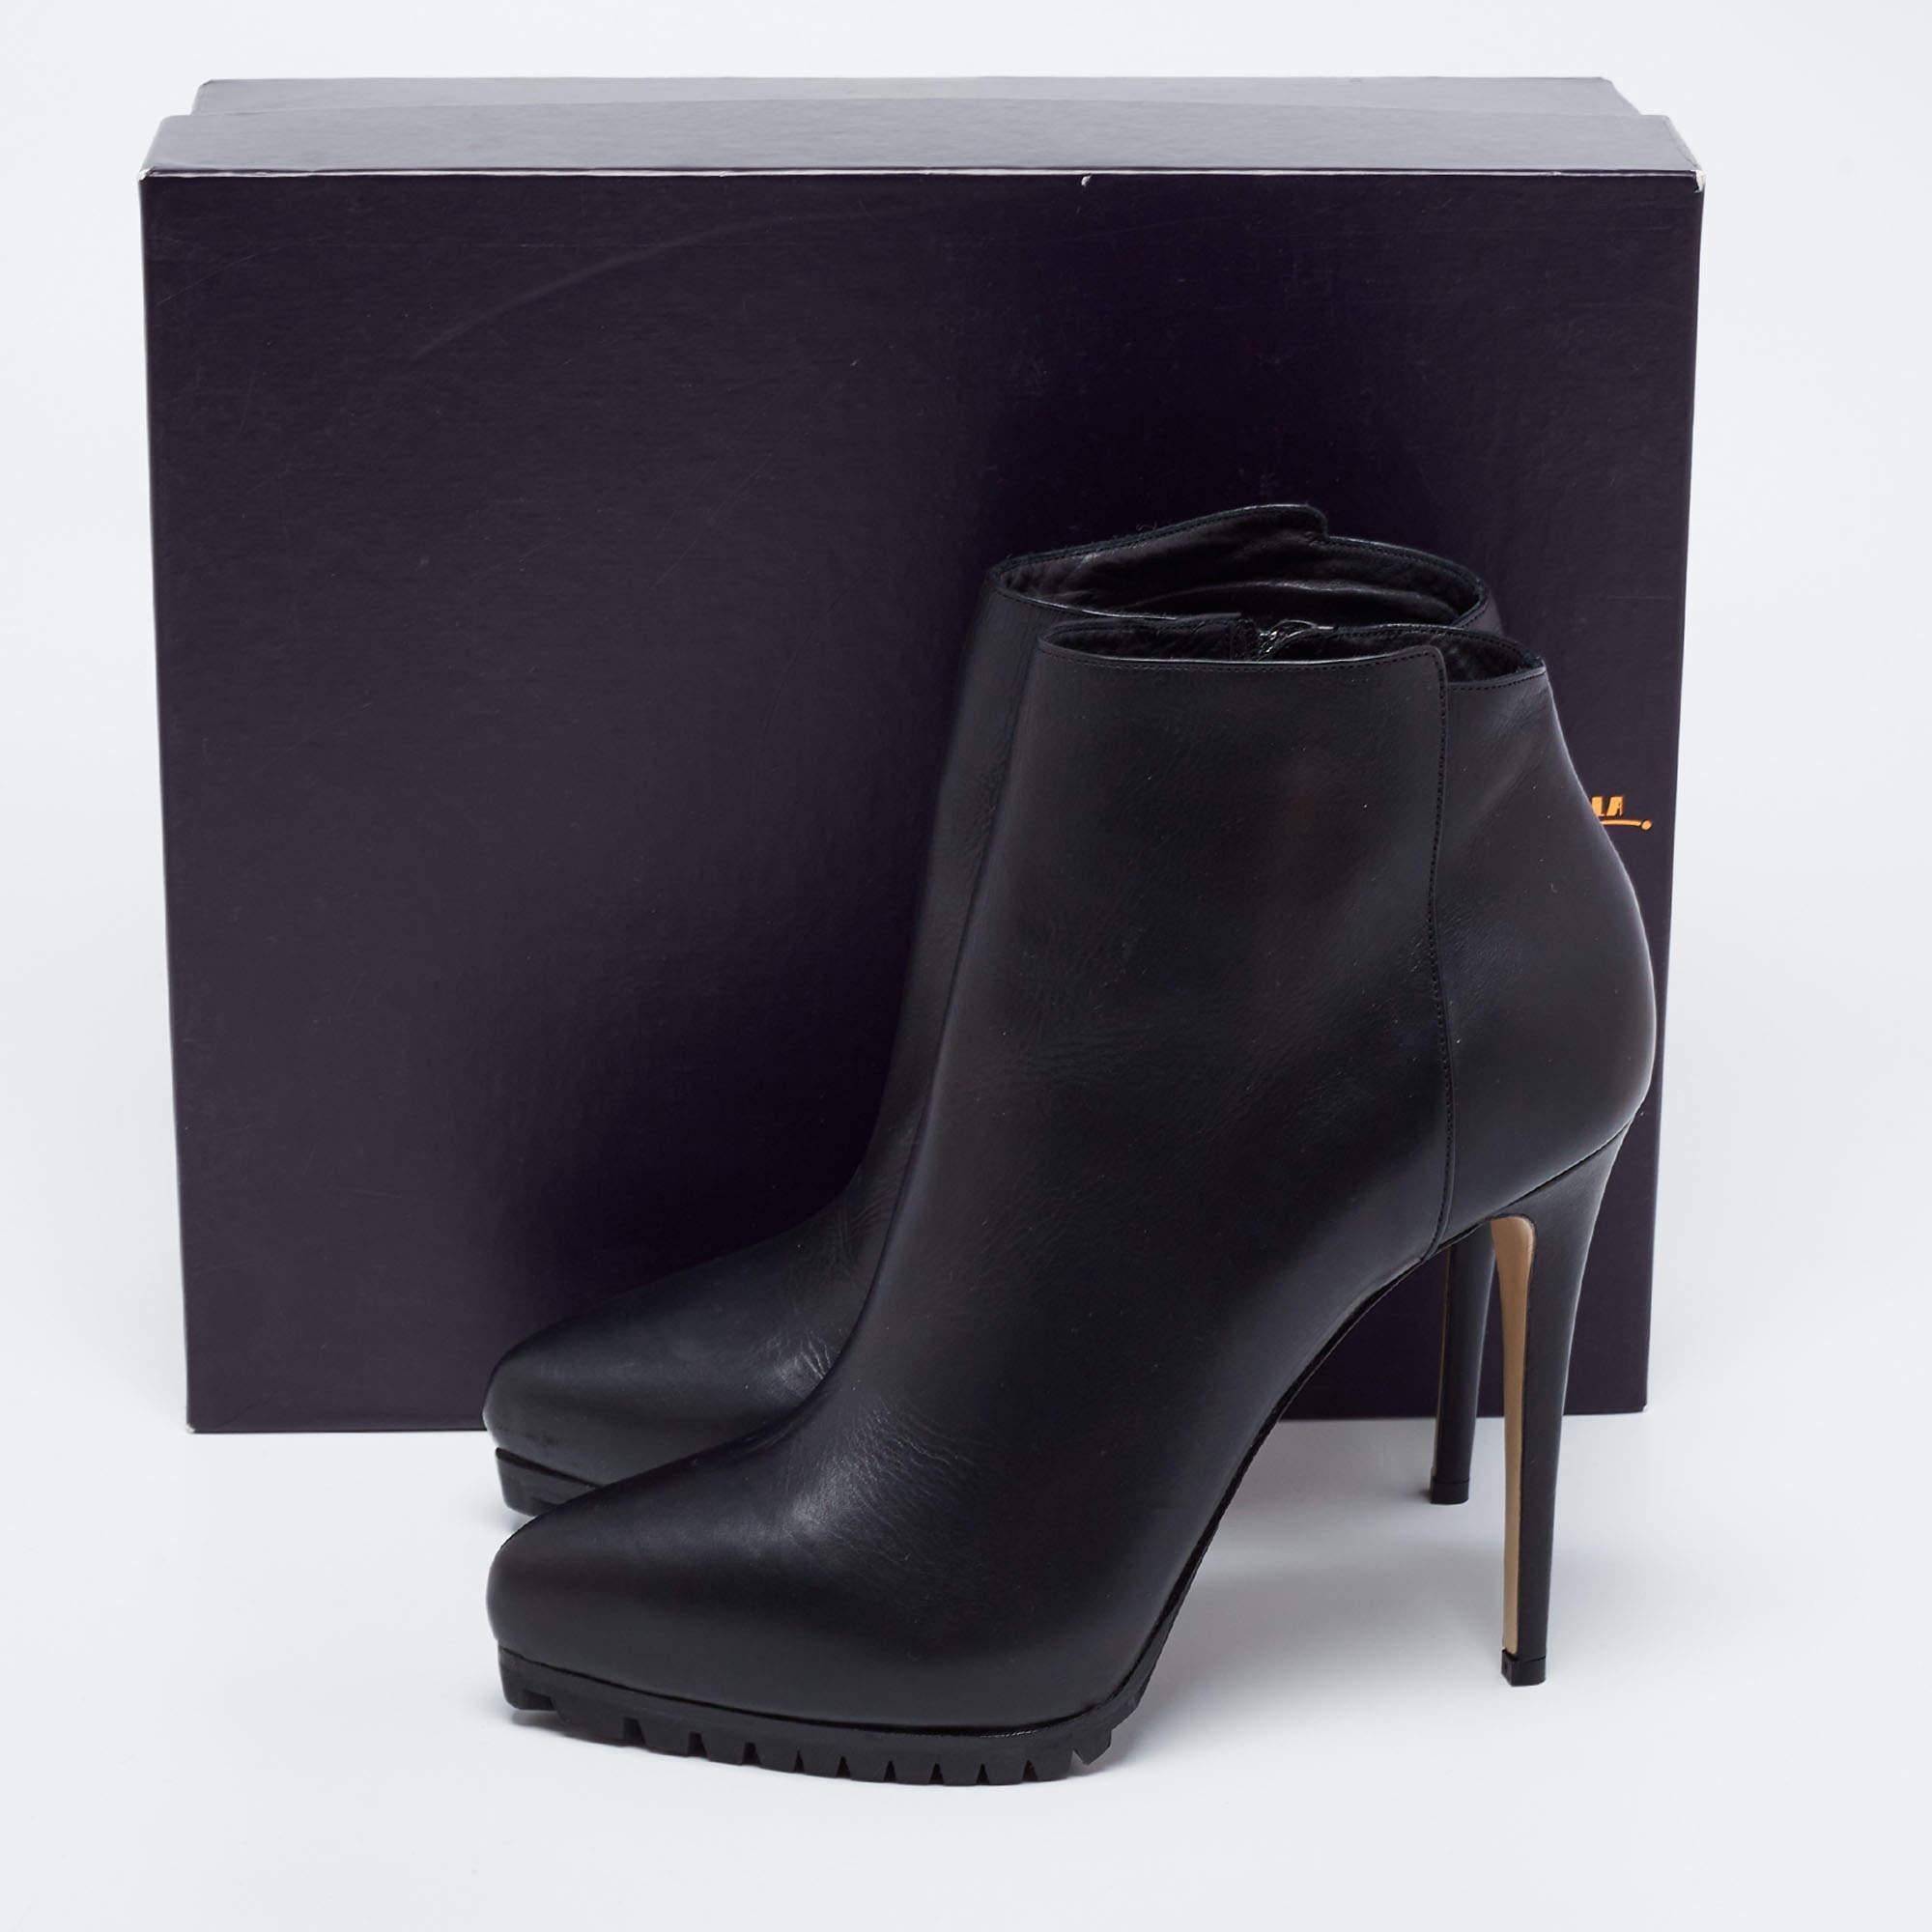 Le Silla Black Leather Platform Ankle Boots Size 40 5